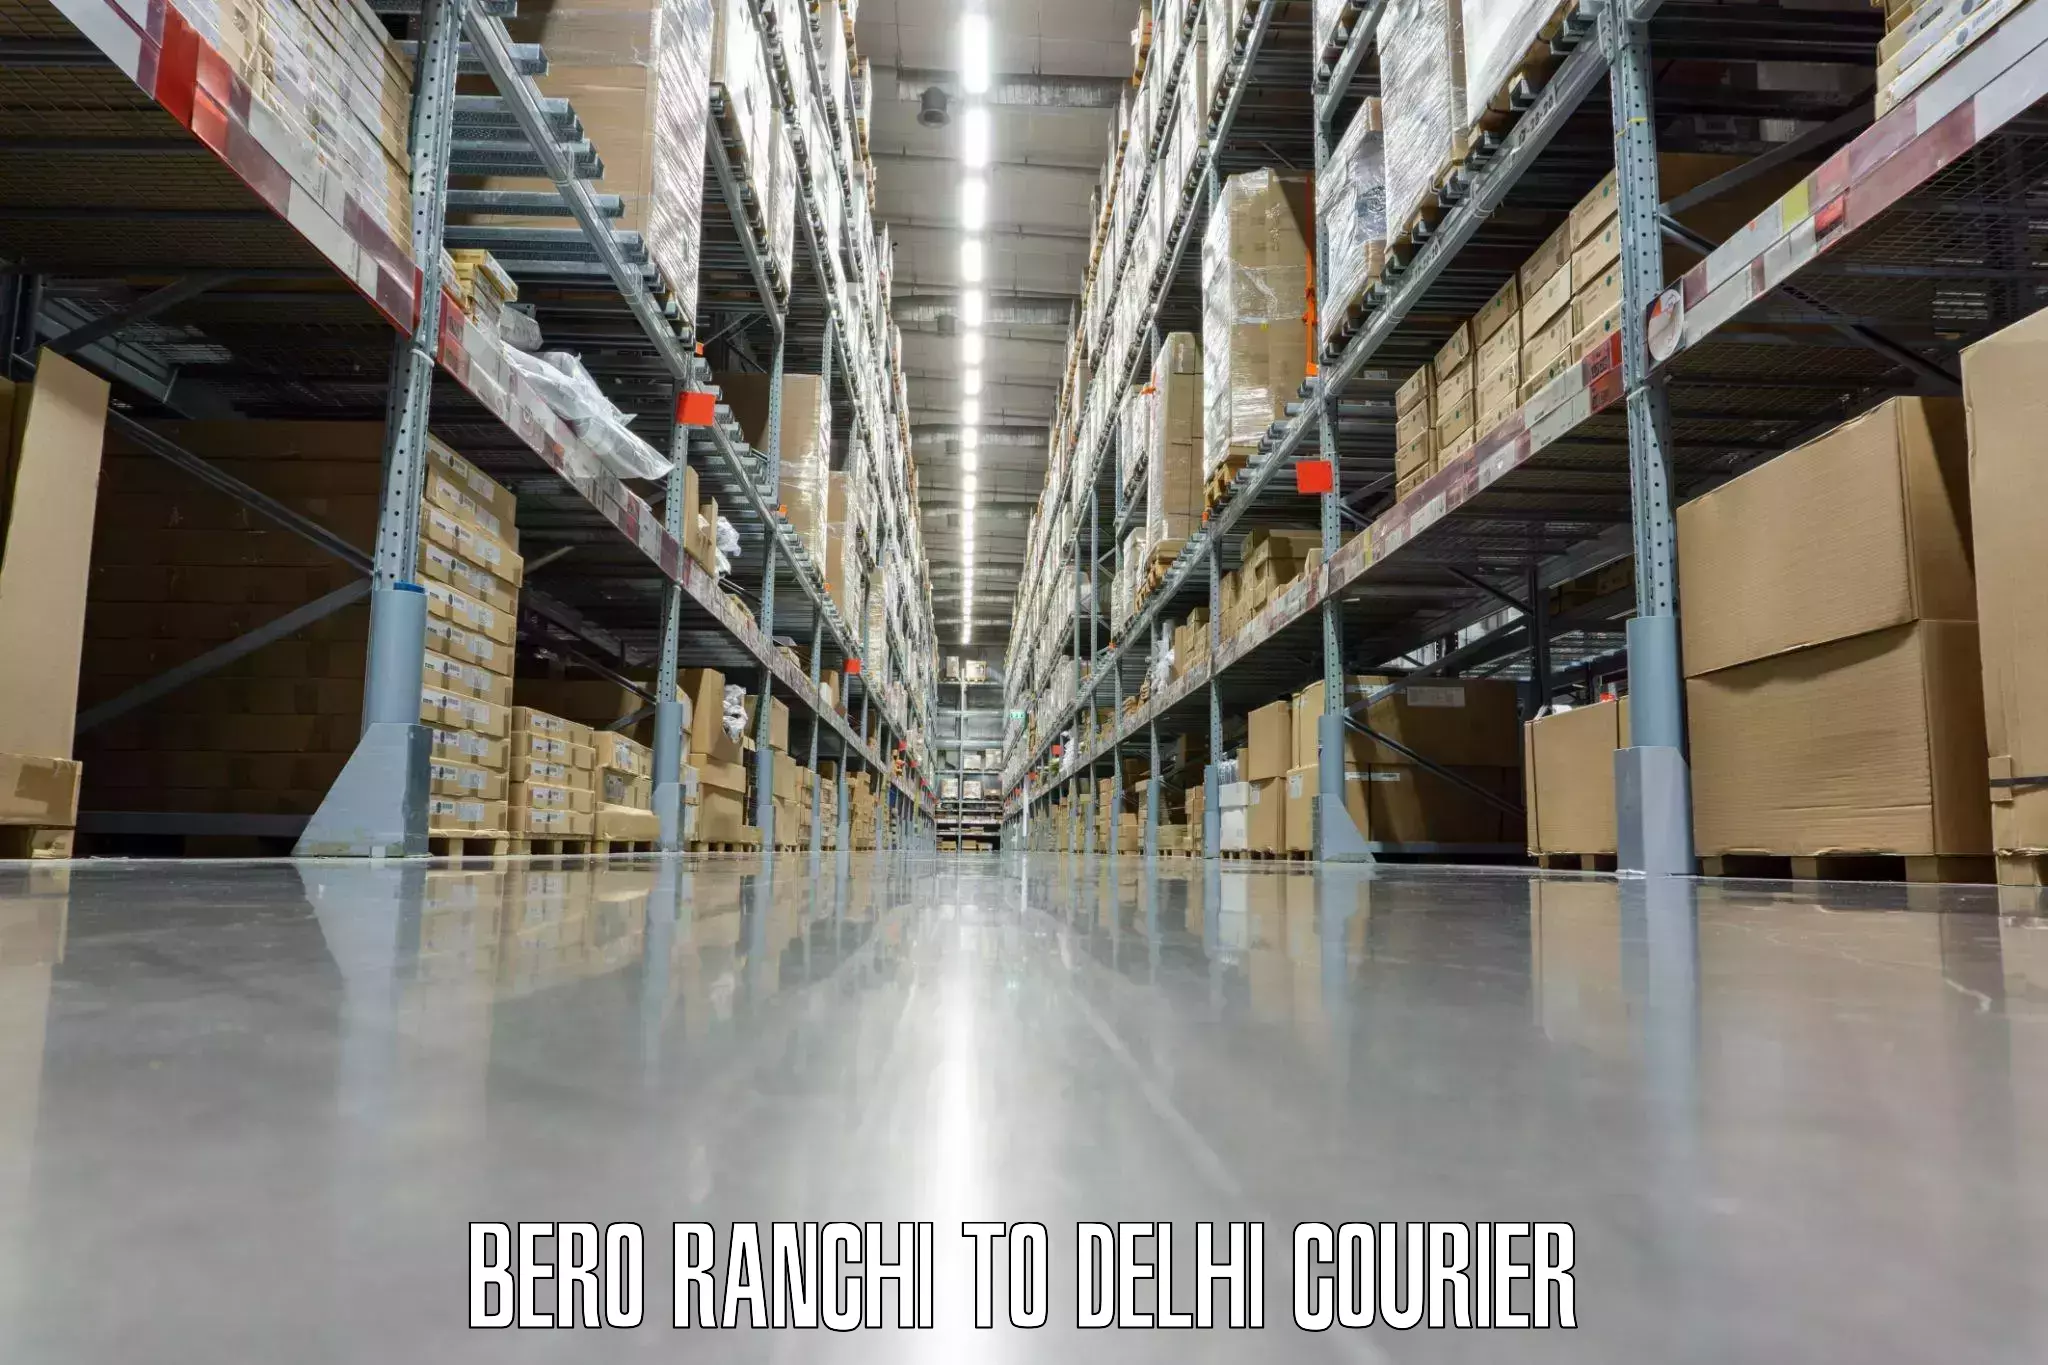 Door-to-door baggage service Bero Ranchi to Jamia Millia Islamia New Delhi